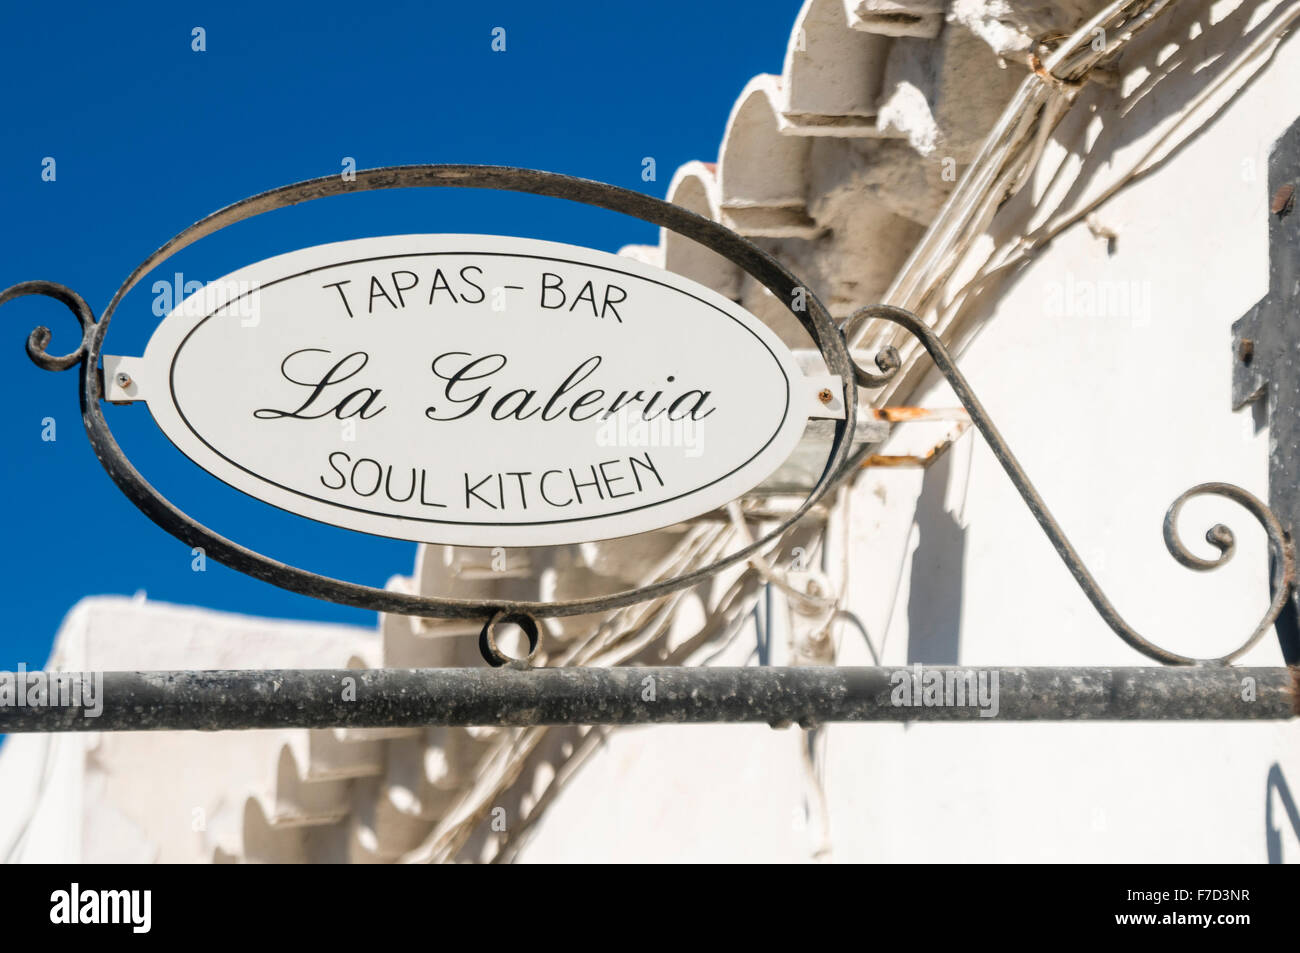 Segno al di fuori di un tapas bar in una cittadina spagnola 'La Galeria' Soul kitchen Foto Stock